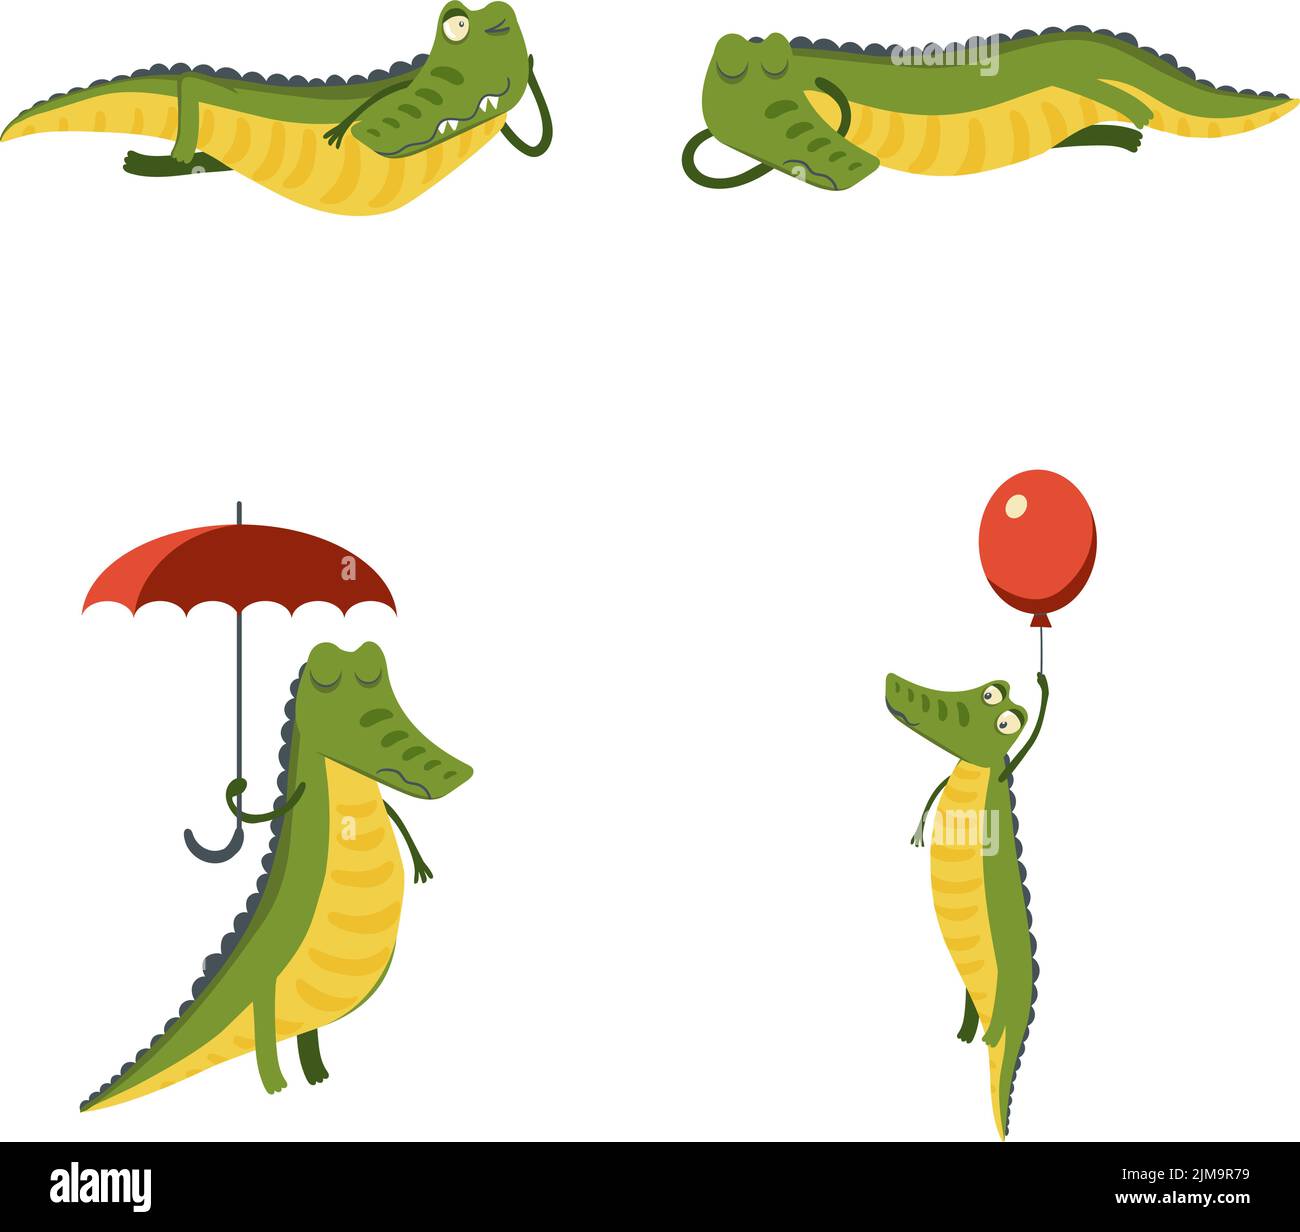 Ensemble de dessin animé sympathique personnage crocodile dormir, wencing, debout sous un parapluie, voler Illustration de Vecteur